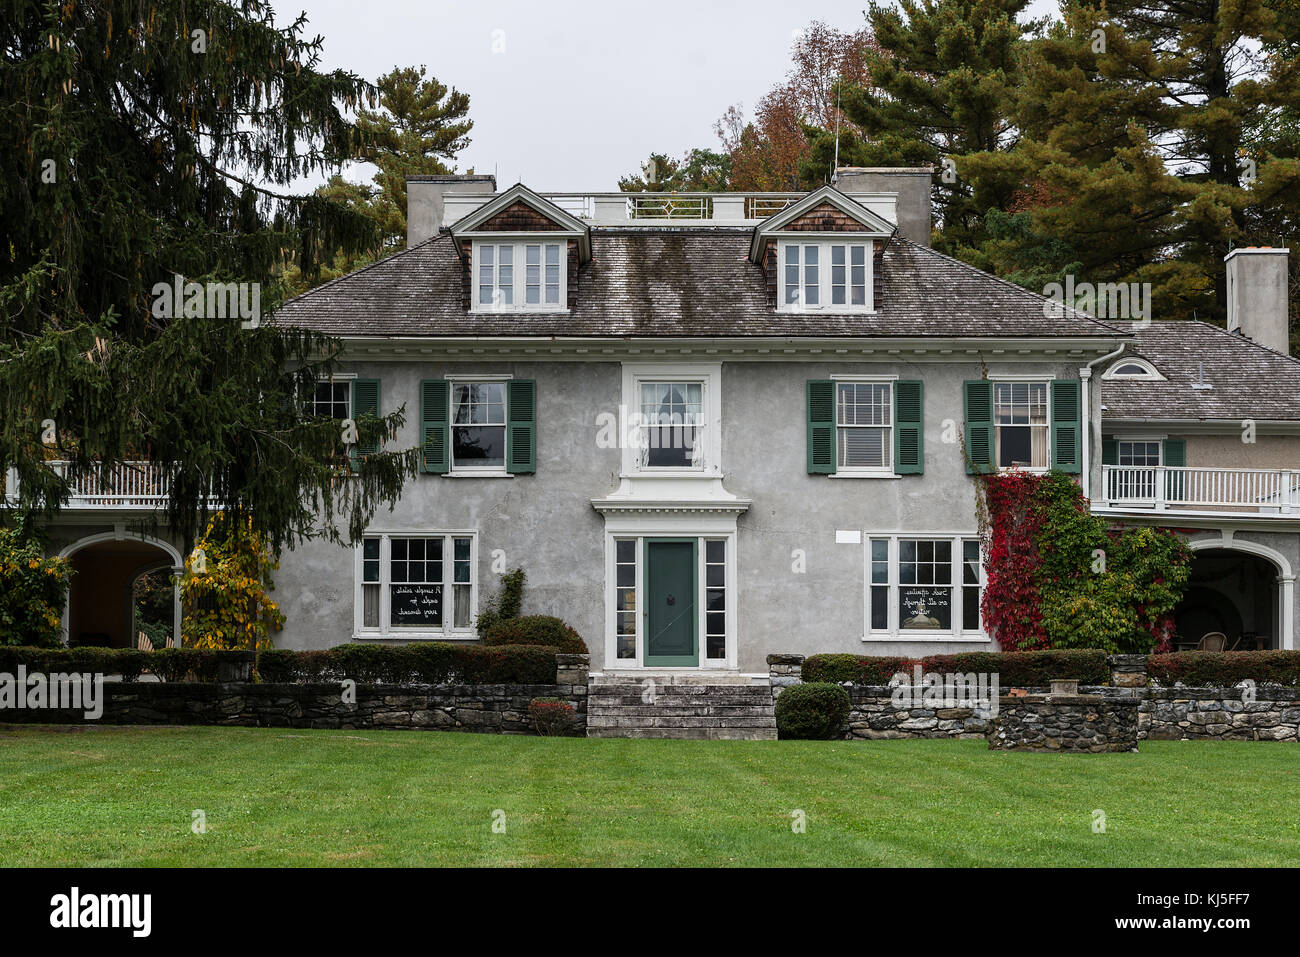 Chesterwood historique maison et immobilier, Stockbridge, Massachusetts, USA. Banque D'Images